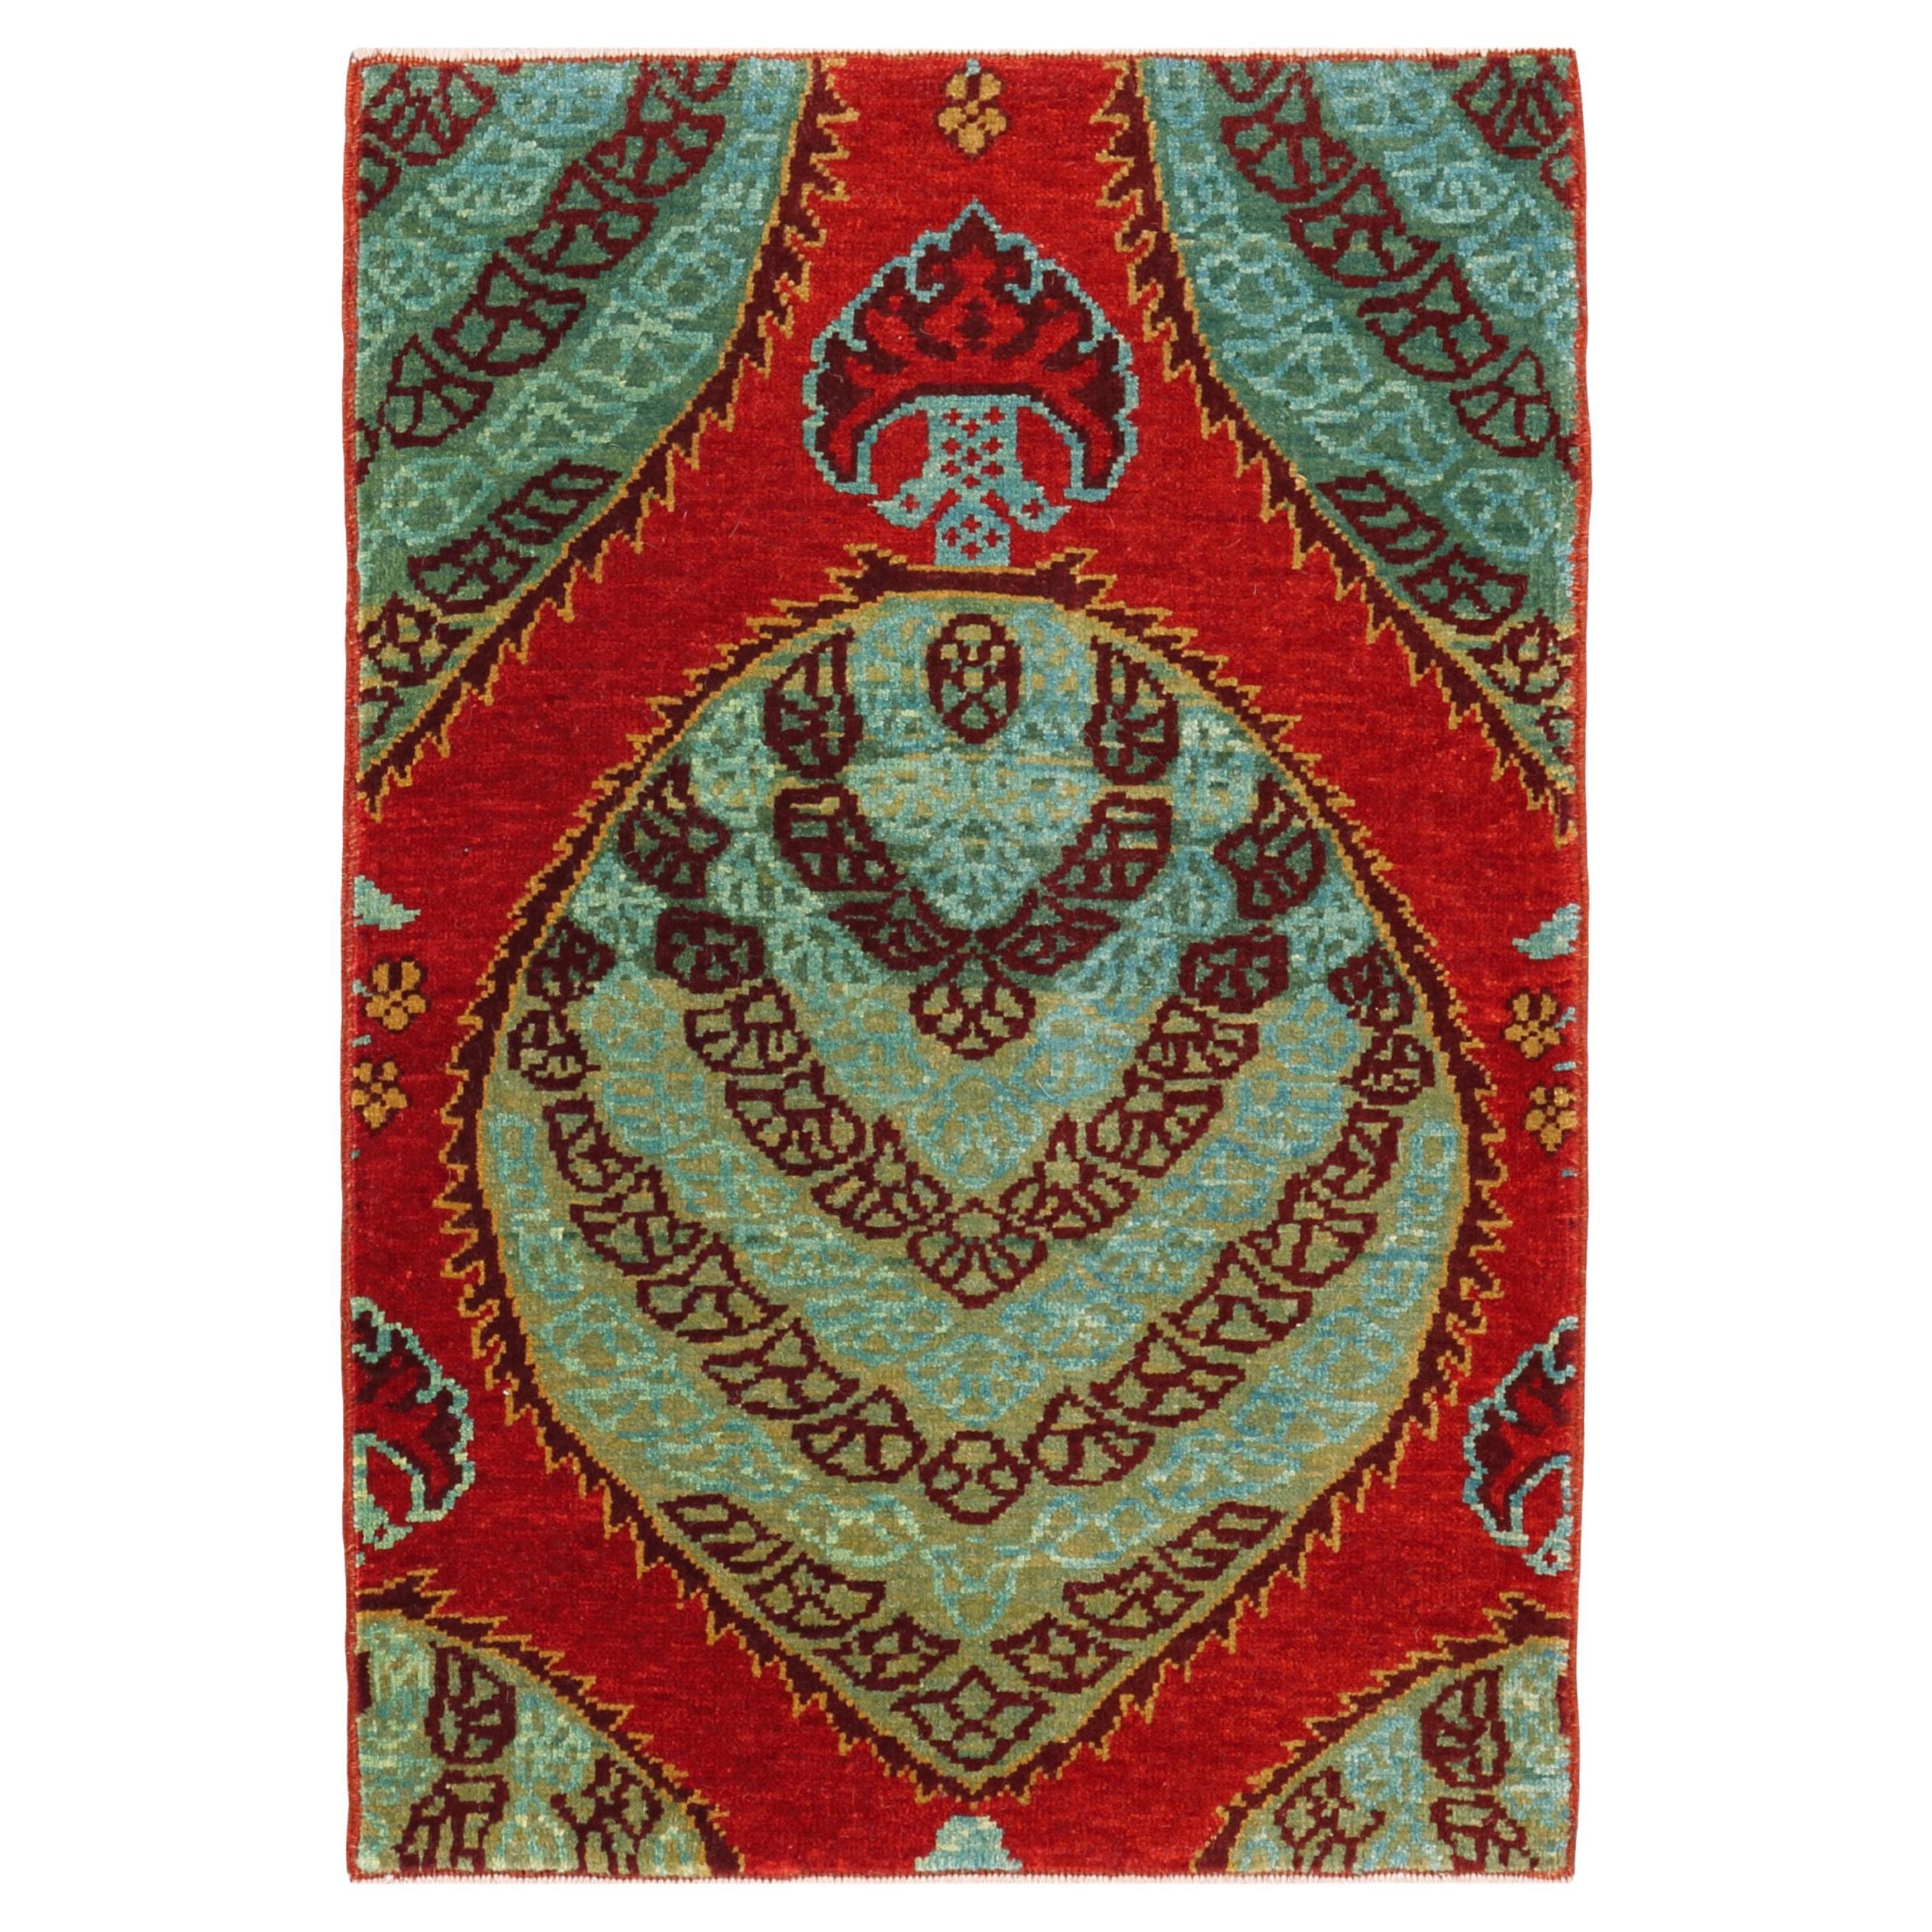 Ararat Rugs Gerous Bidjar Wagireh Pendant Rug Revival Carpet Natural Dyed For Sale